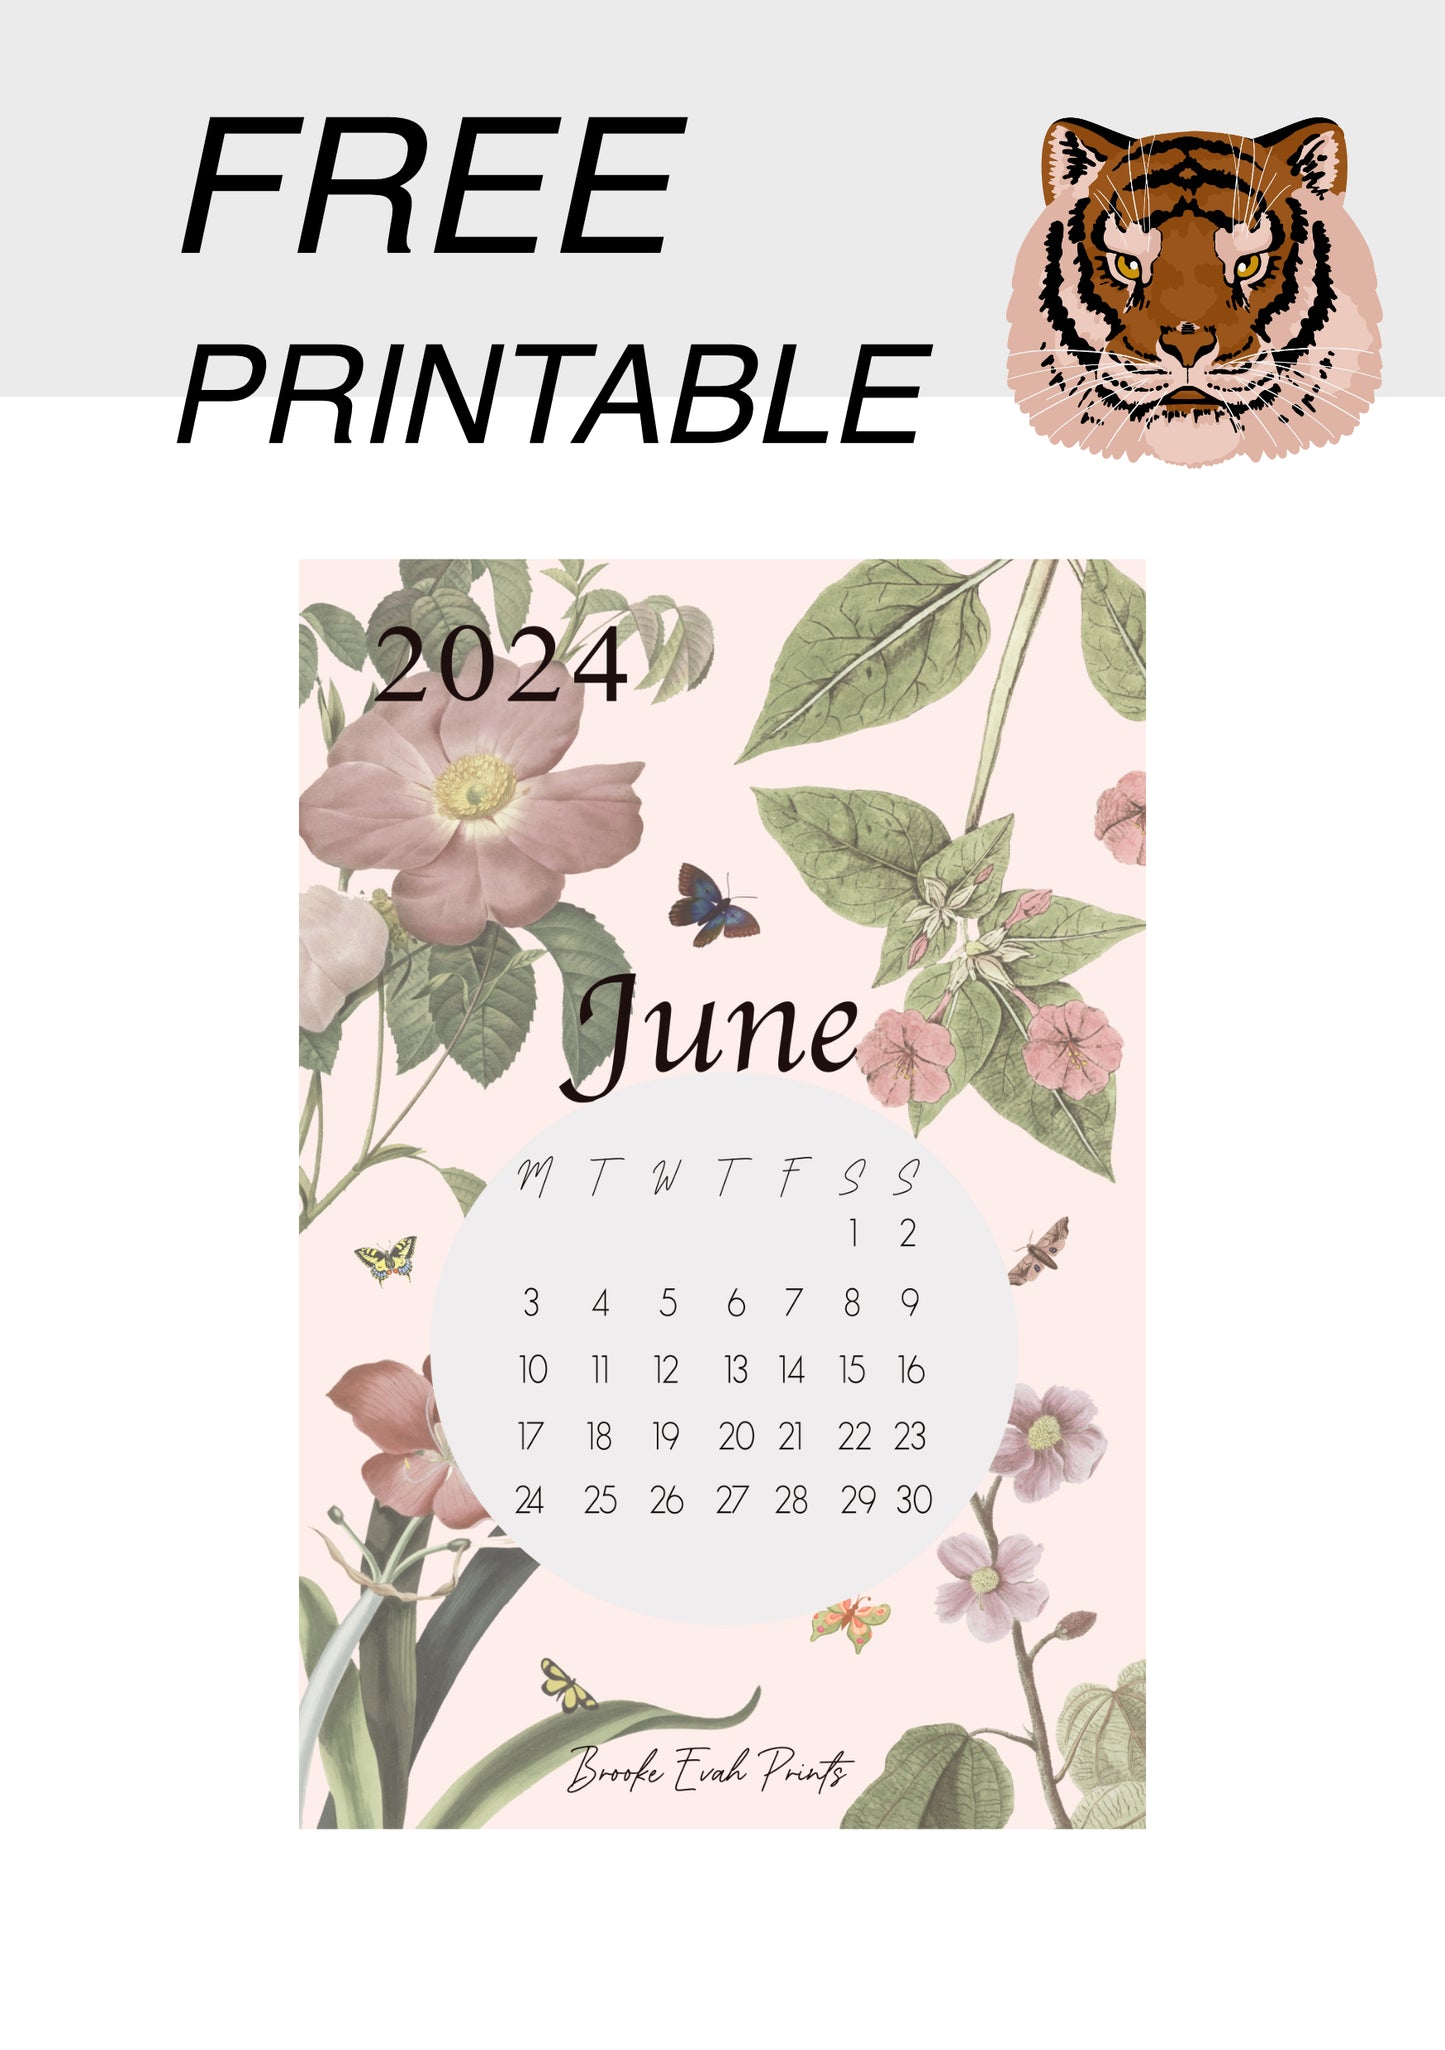 FREE download June 2024 Calendar Card